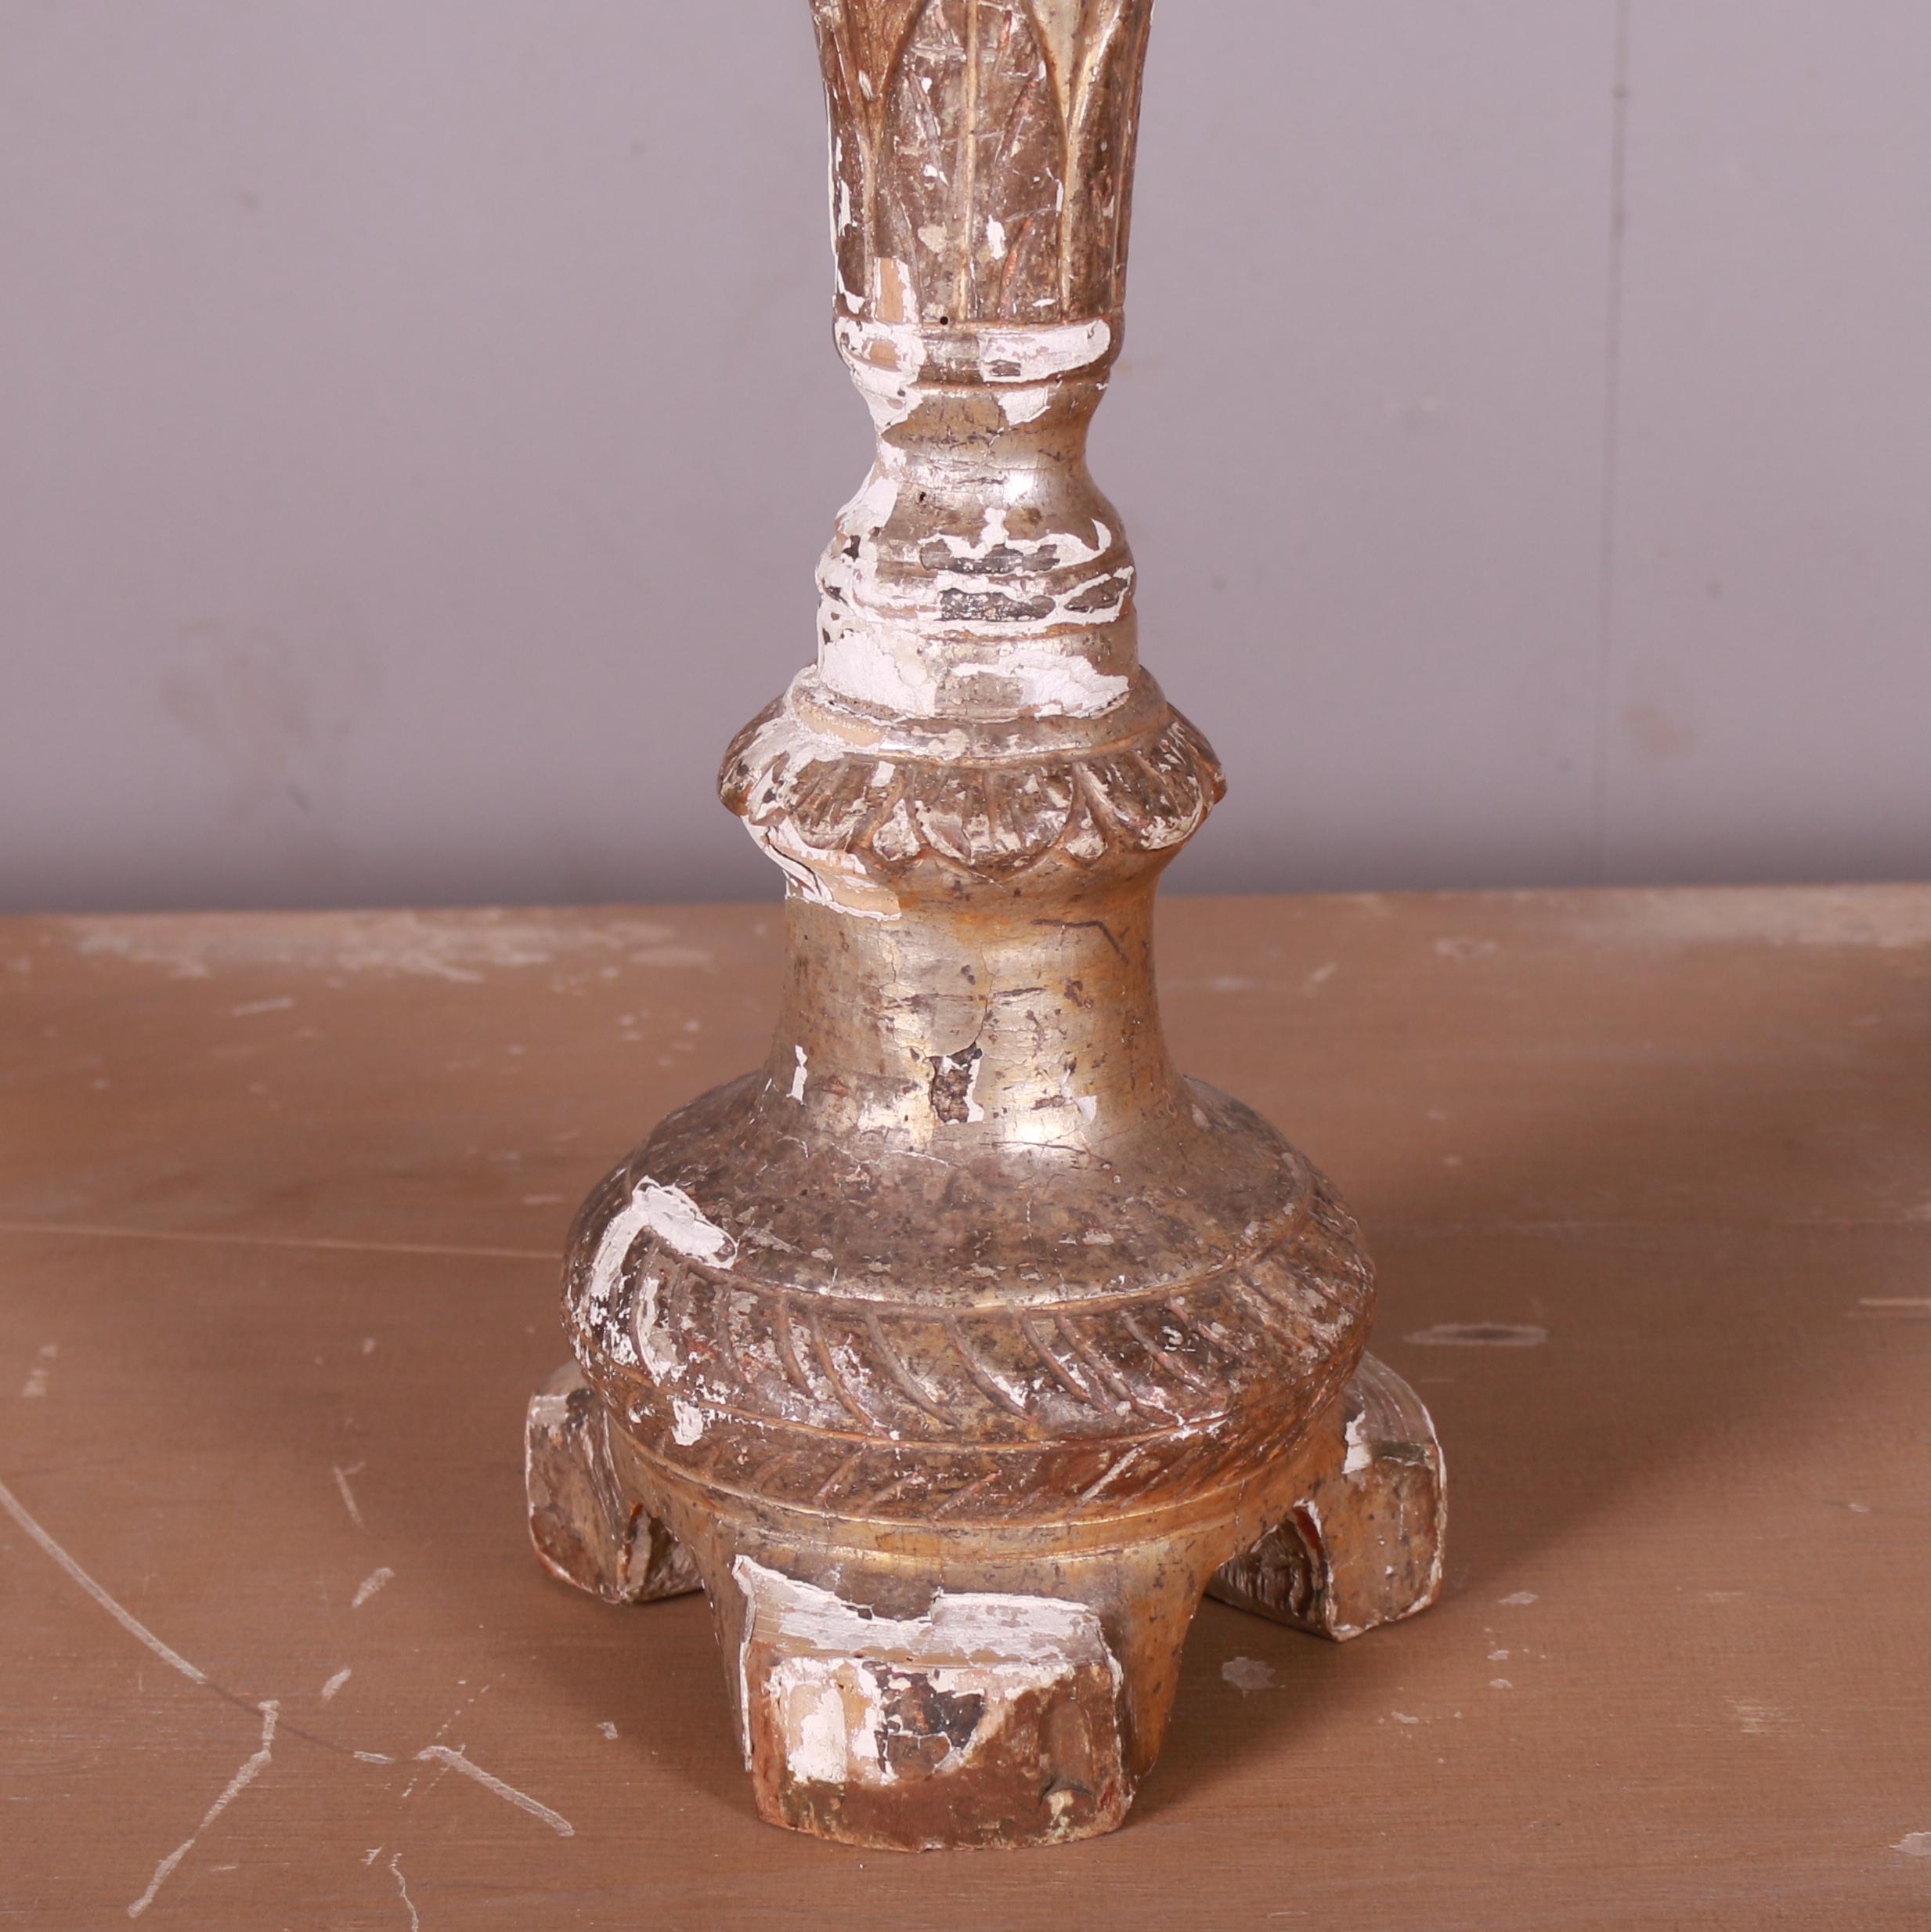 Bougeoir en bois doré italien de la fin du XIXe siècle. 1890.

Référence : 7379

Dimensions
62 cm de haut
Diamètre 17 cm (6,5 pouces).